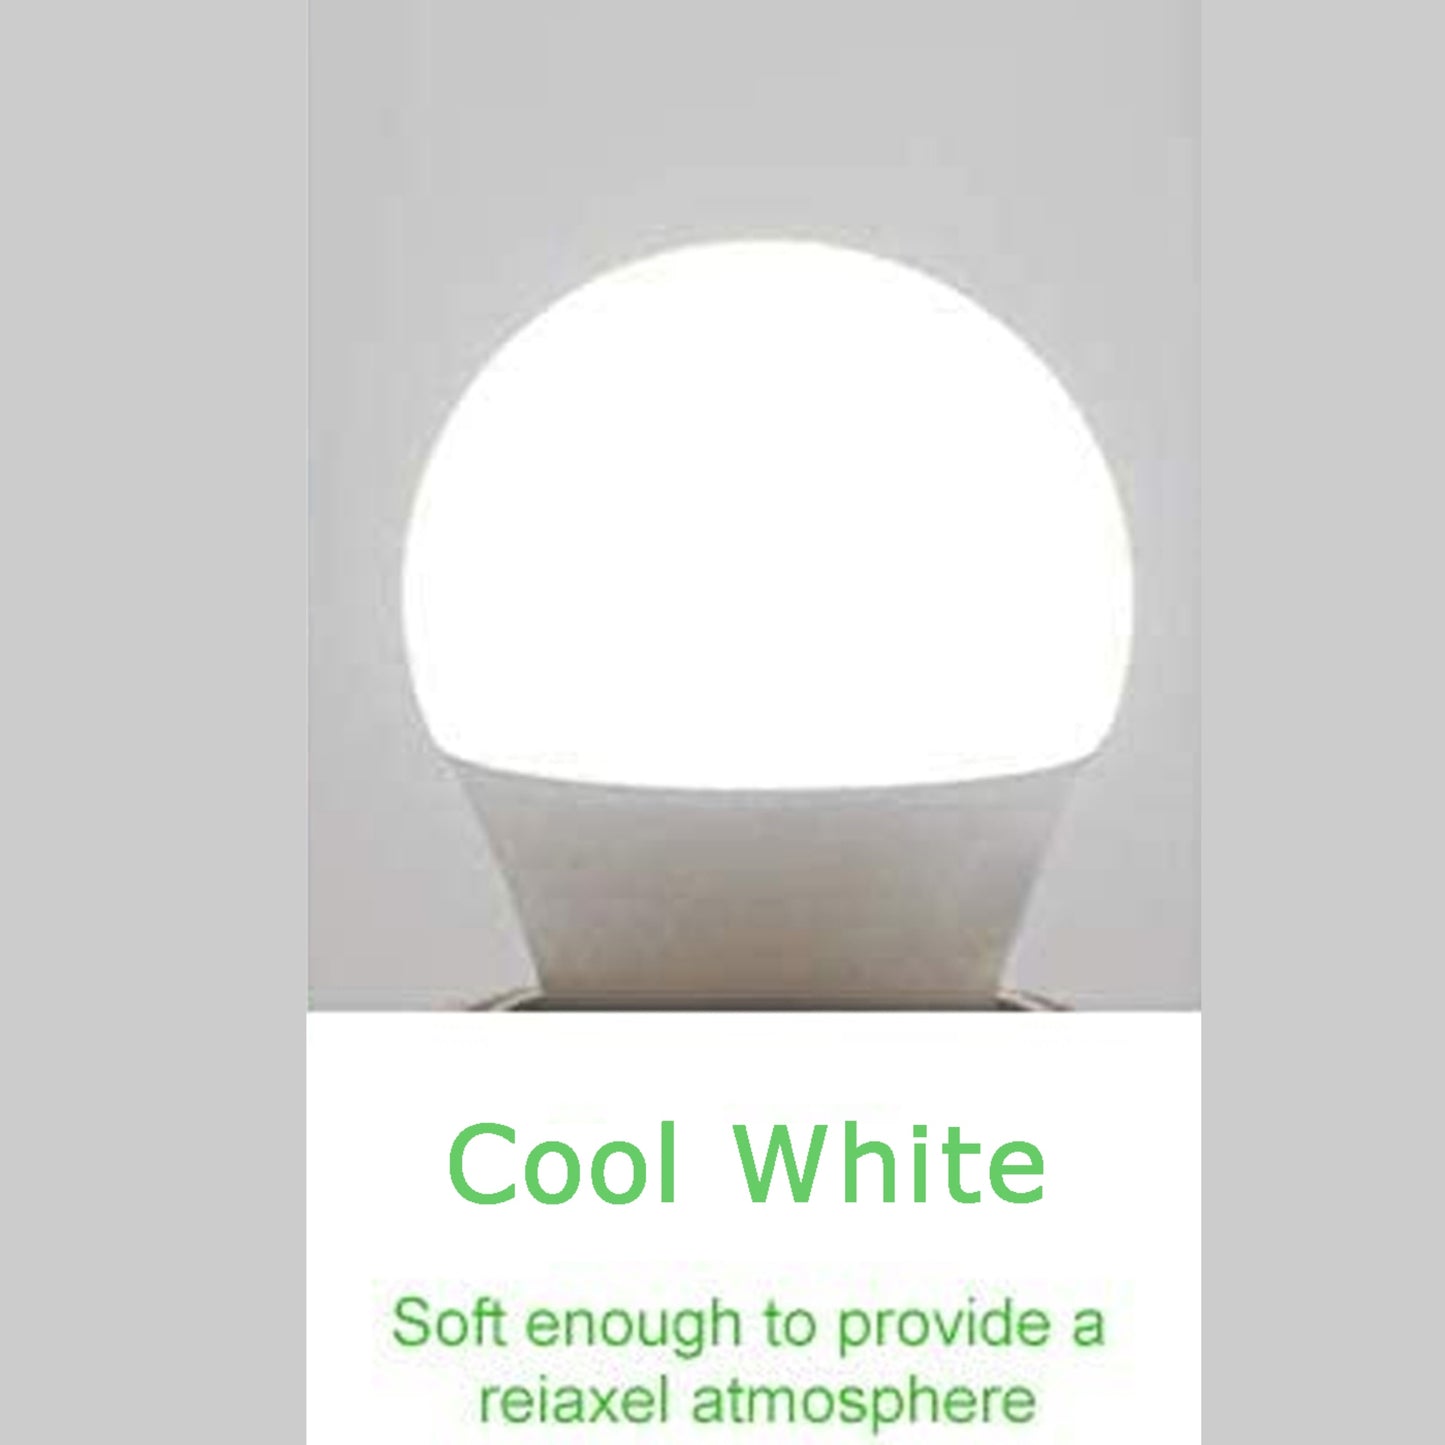 7 W B22 Schraub-LED-Licht GLS-Lampen, energiesparende Edison Cool White 6000 K nicht dimmbare Lichter